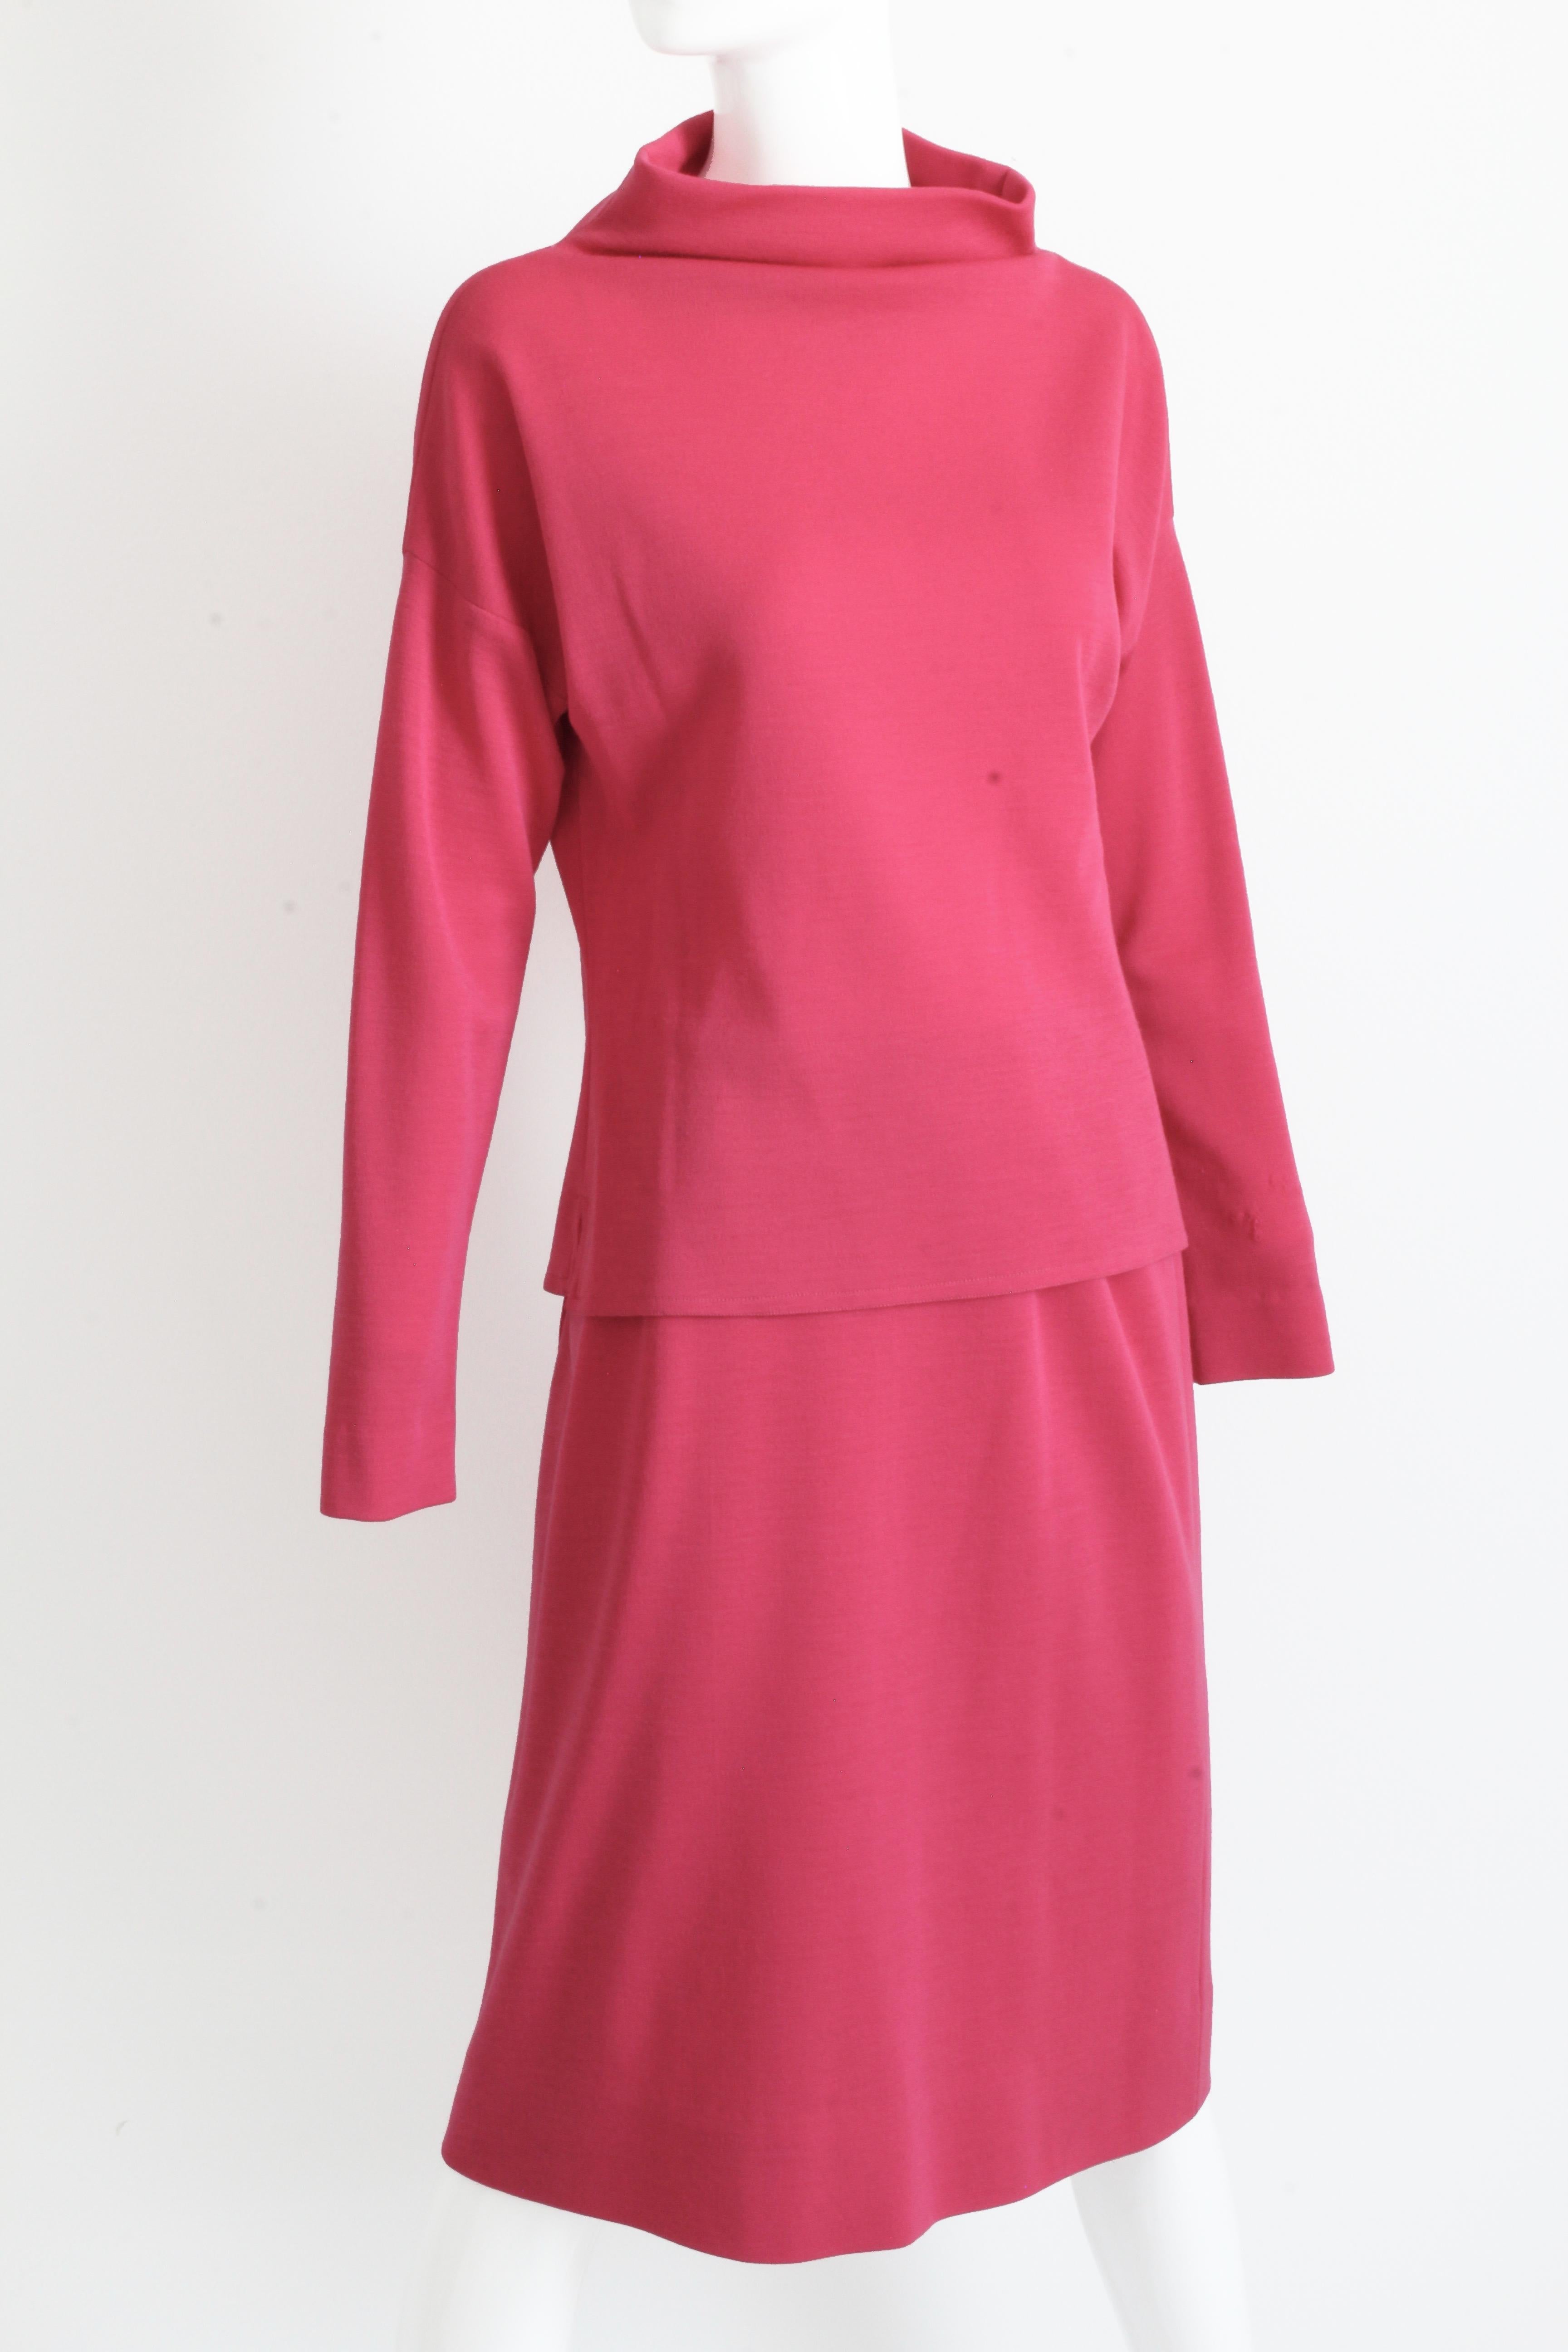 Ce costume rose de 2 pièces a été fabriqué par Bonnie Cashin pour Sills, probablement au début des années 1960.  Fabriquée en tricot de jersey rose, elle est accompagnée d'un haut à manches raglan et d'une jupe crayon doublée.  La couleur est